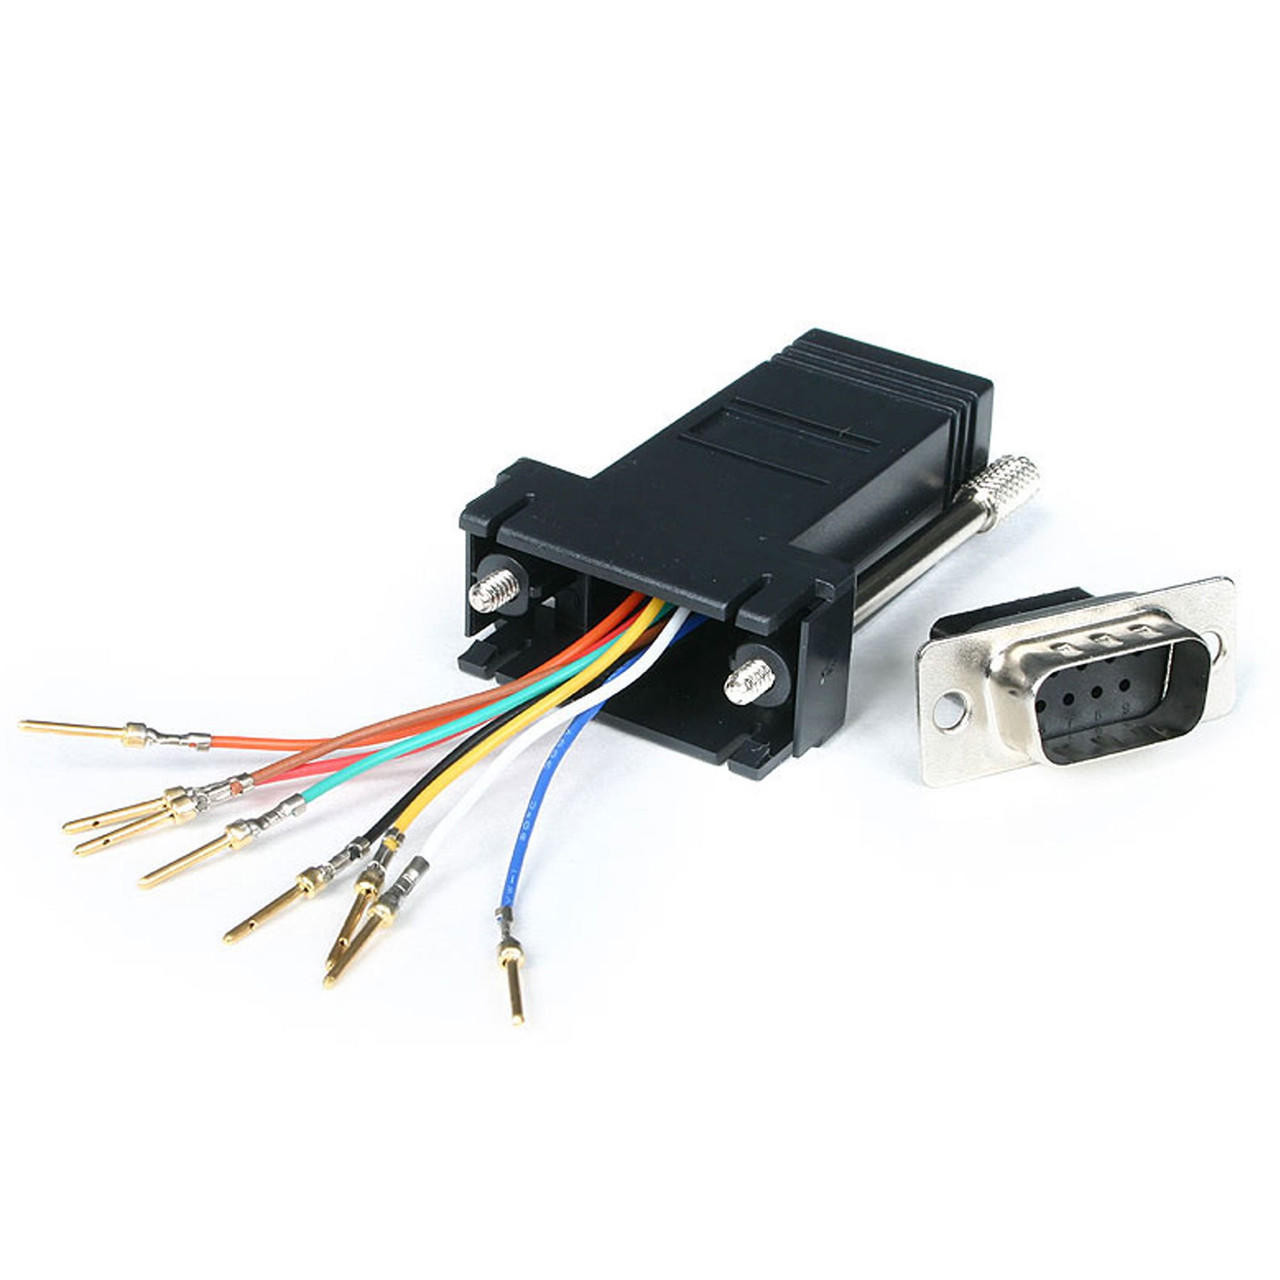 StarTech.com RJ45 Splitter Cable Adapter - Cat5/Cat5e Cable Drop -  RJ45SPLITTER - Cable Connectors 